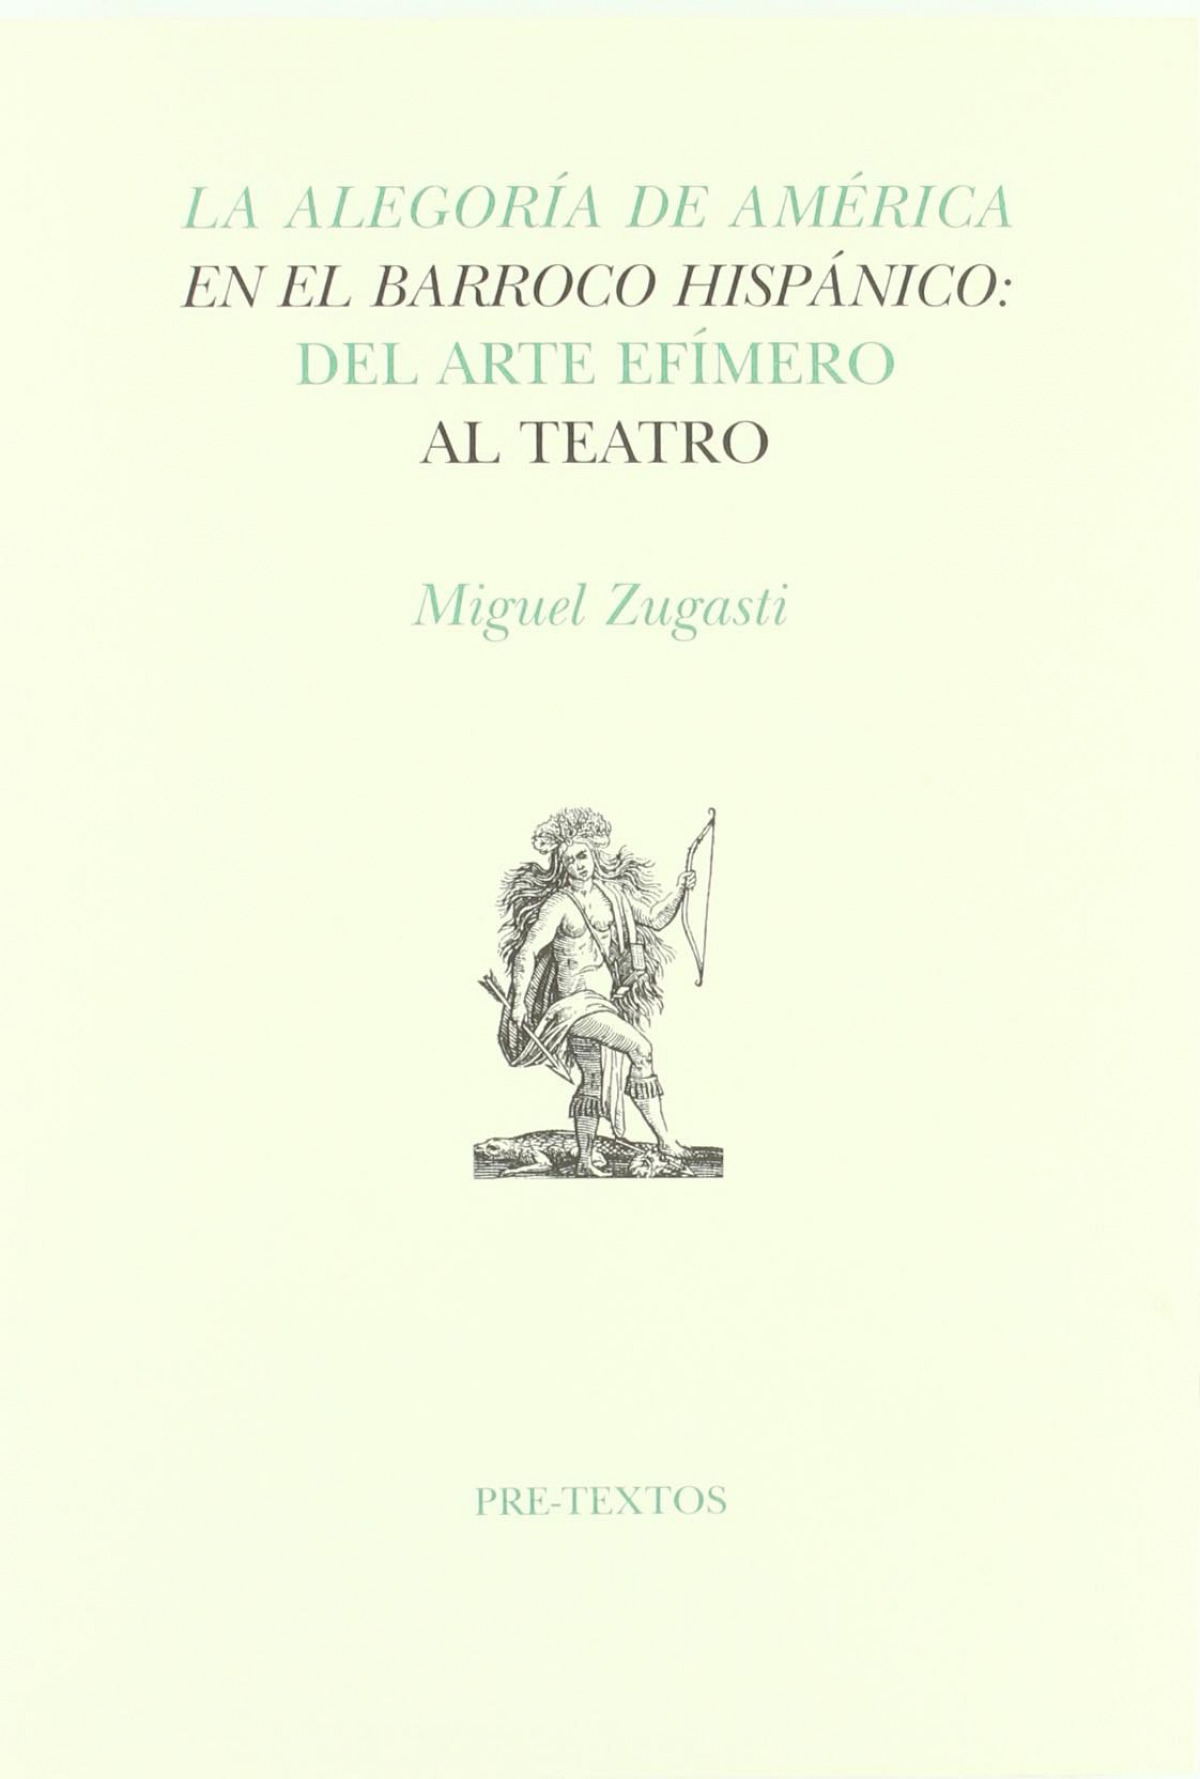 La alegroría de America en barroco hispanico - Zugasti, Miguel